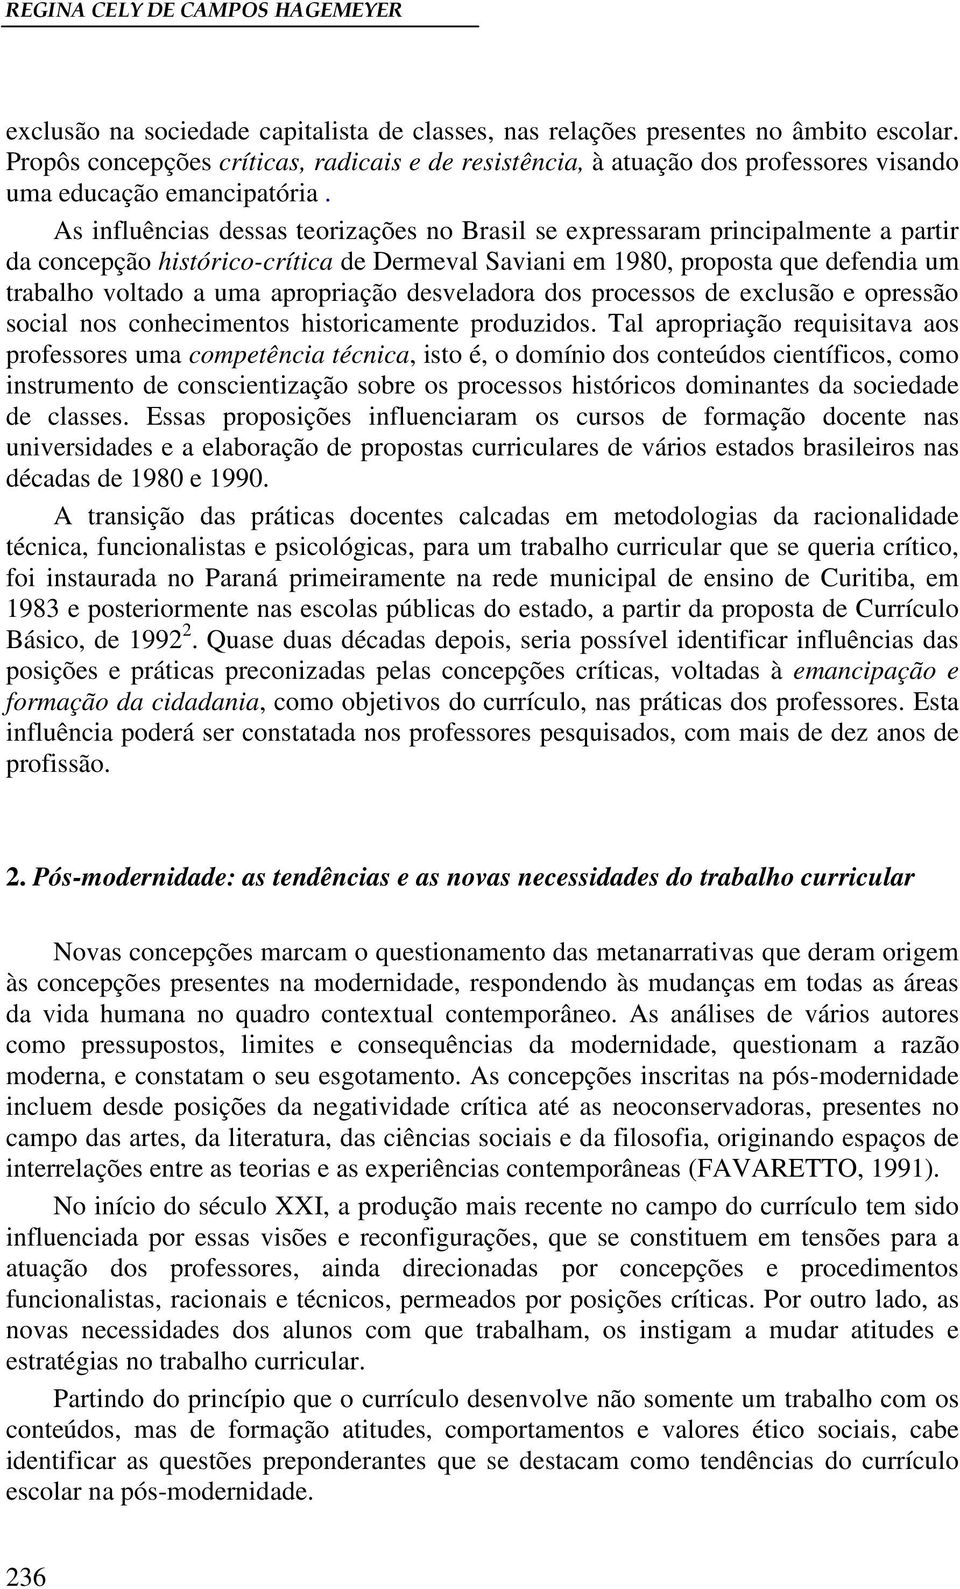 As influências dessas teorizações no Brasil se expressaram principalmente a partir da concepção histórico-crítica de Dermeval Saviani em 1980, proposta que defendia um trabalho voltado a uma